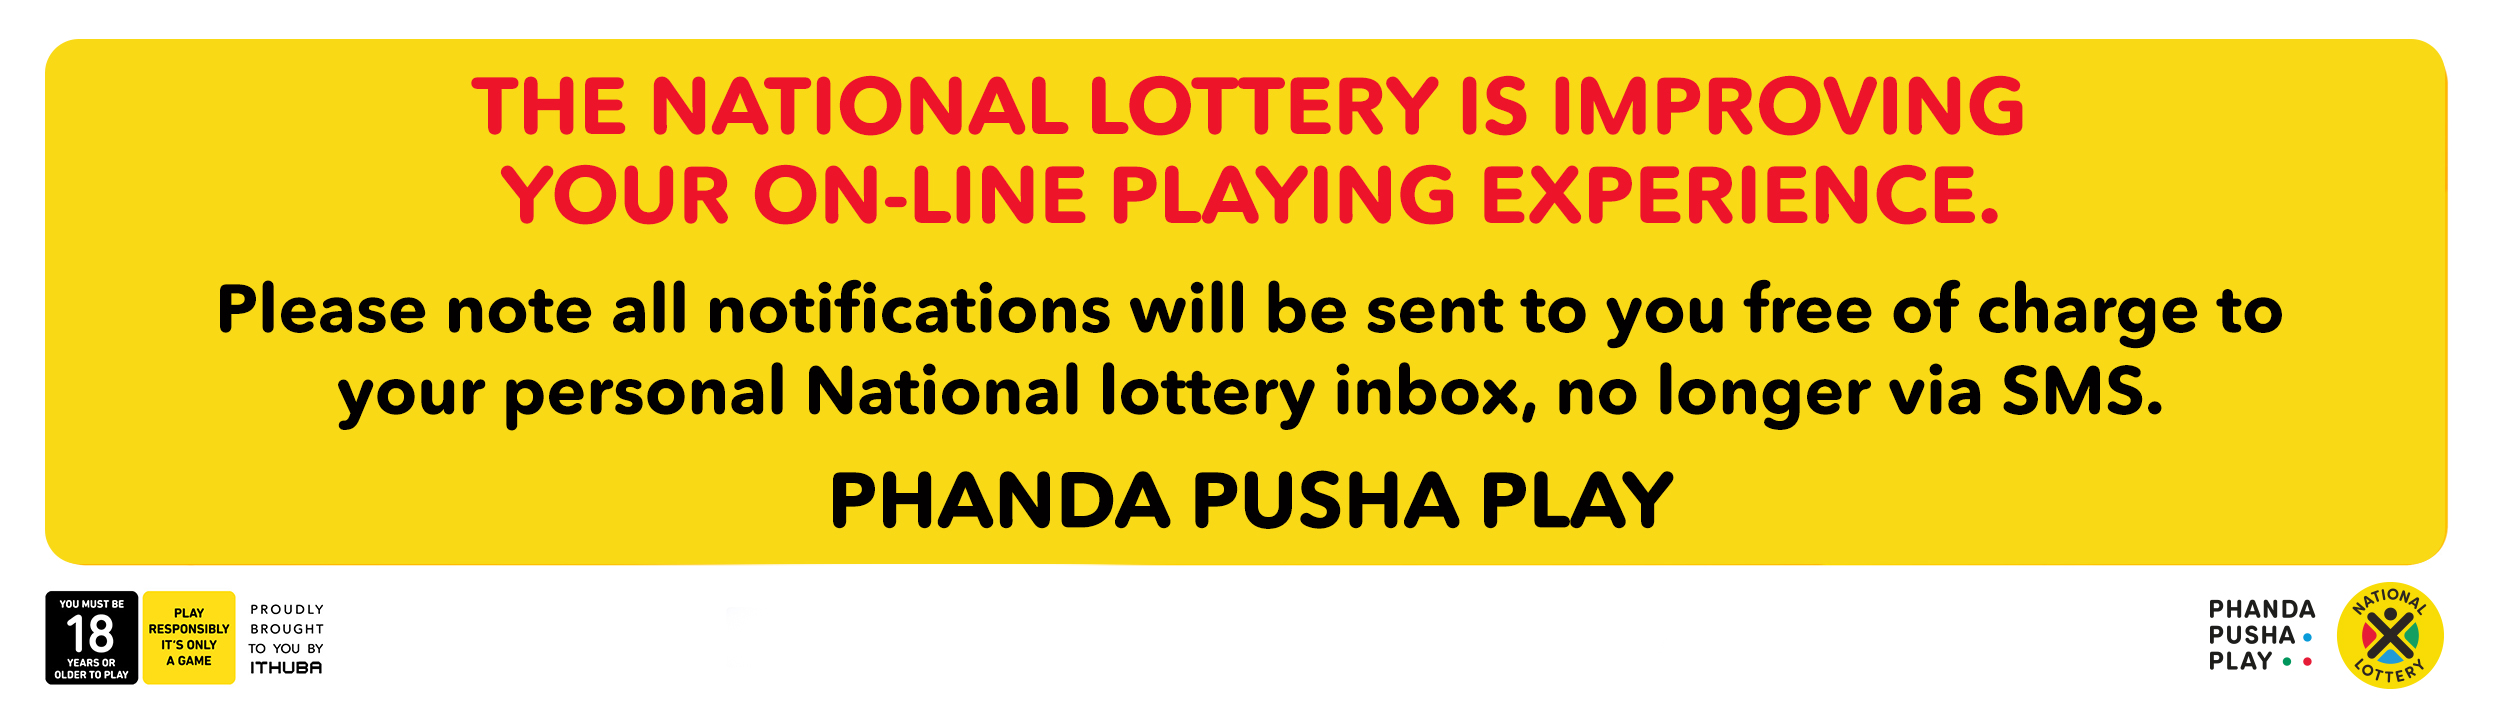 ithuba next lotto jackpot